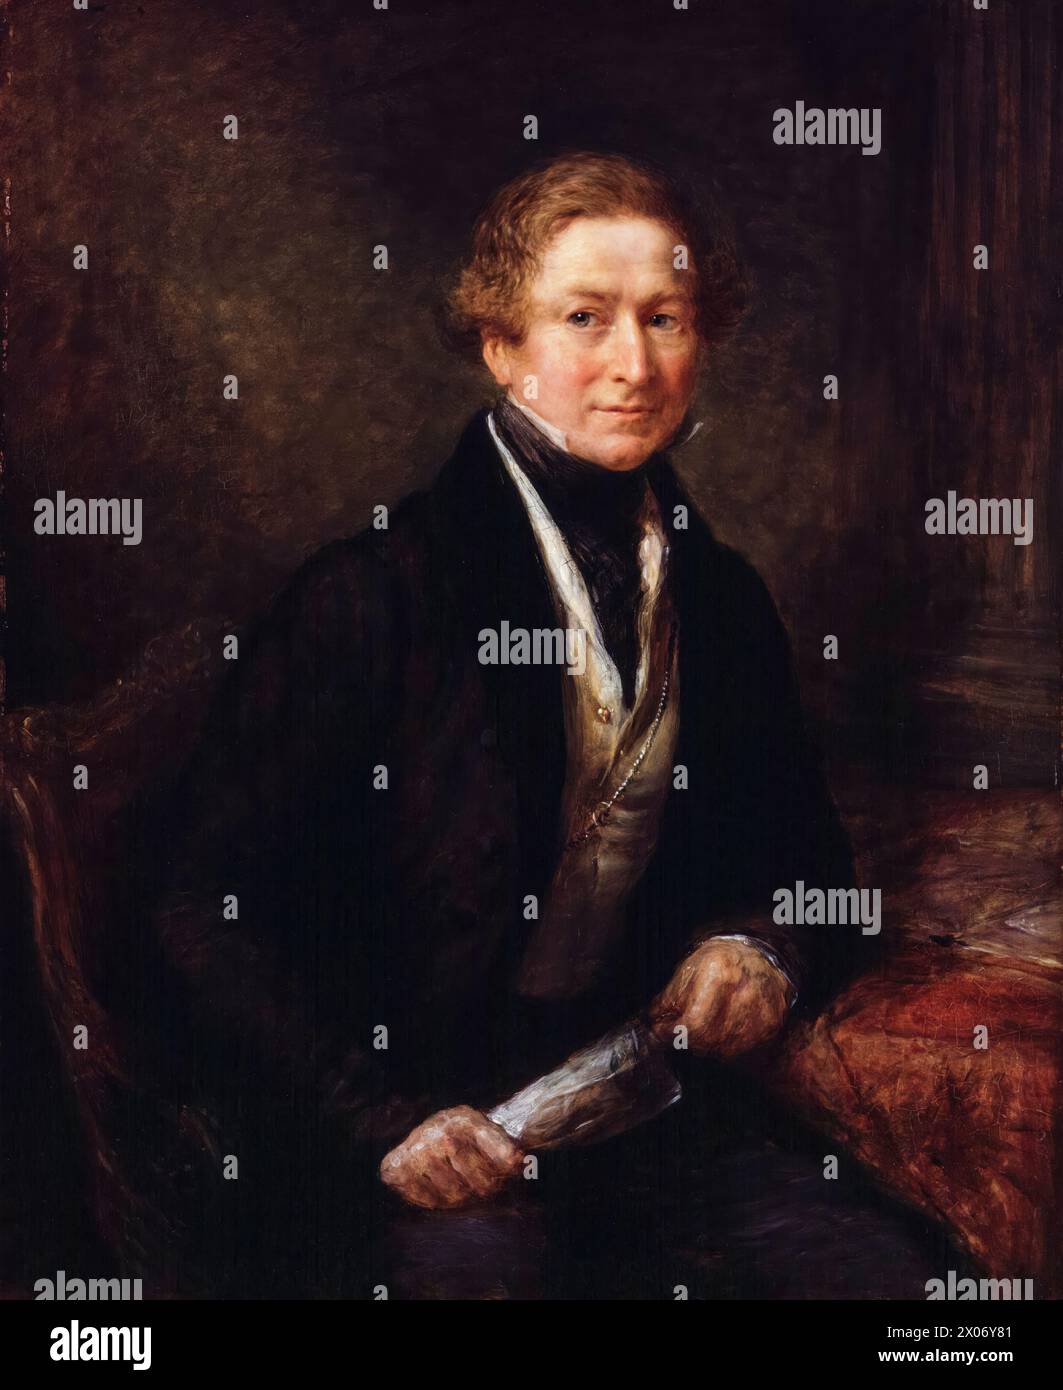 Sir Robert Peel (1788-1850), 2e baronnet, deux fois premier ministre du Royaume-Uni 1834-1835 et 1841-1846, portrait peint à l'huile sur panneau par John Linnell, 1838 Banque D'Images